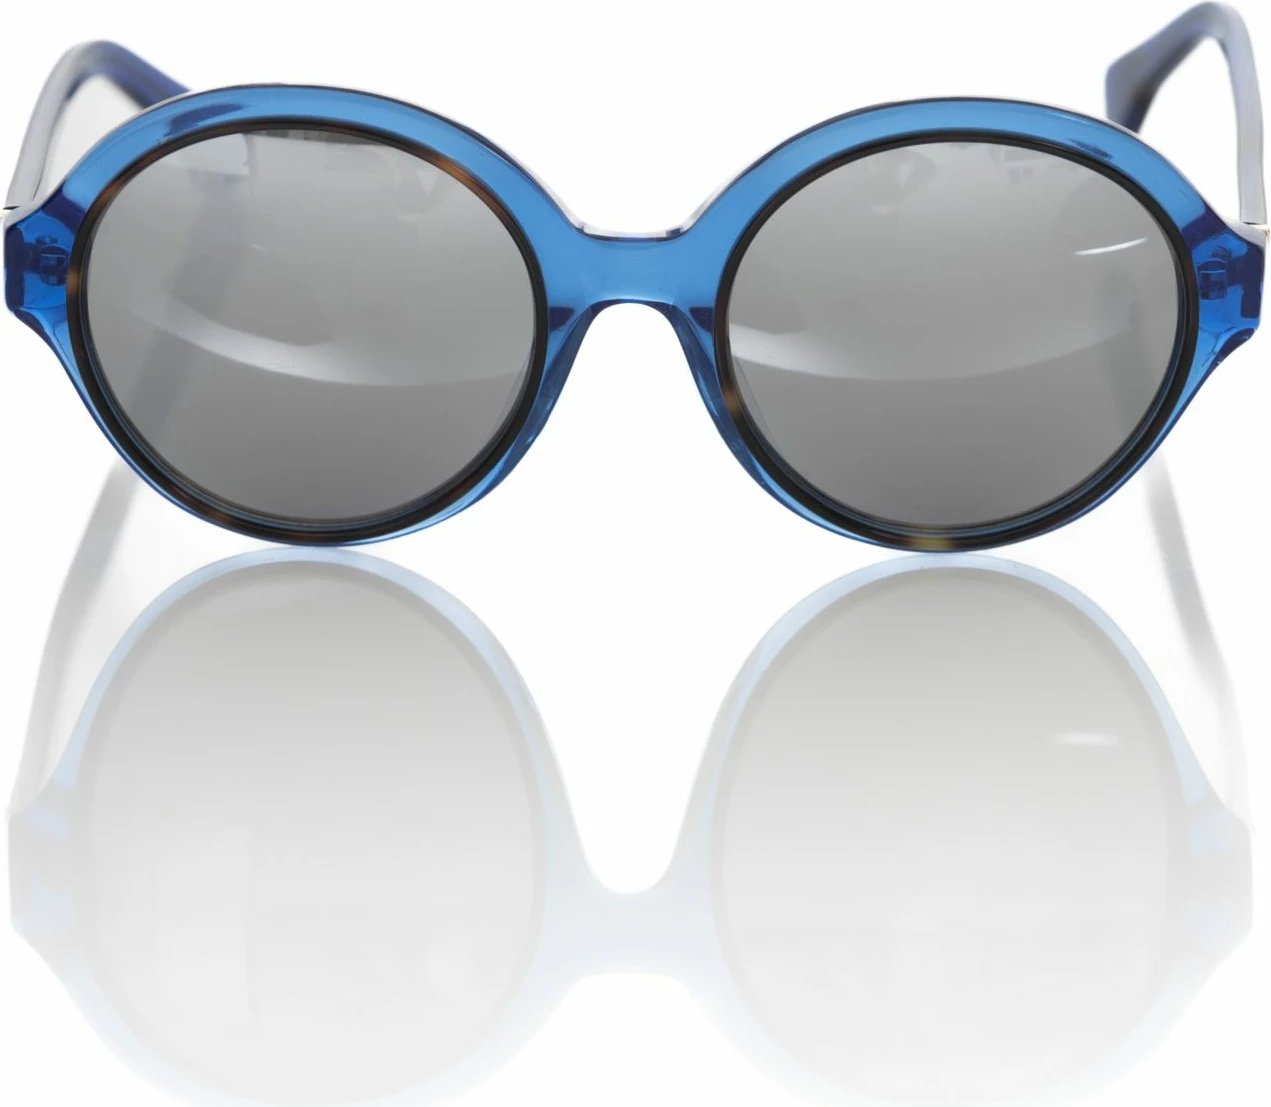 Syze dielli për femra Frankie Morello, të kaltërta 